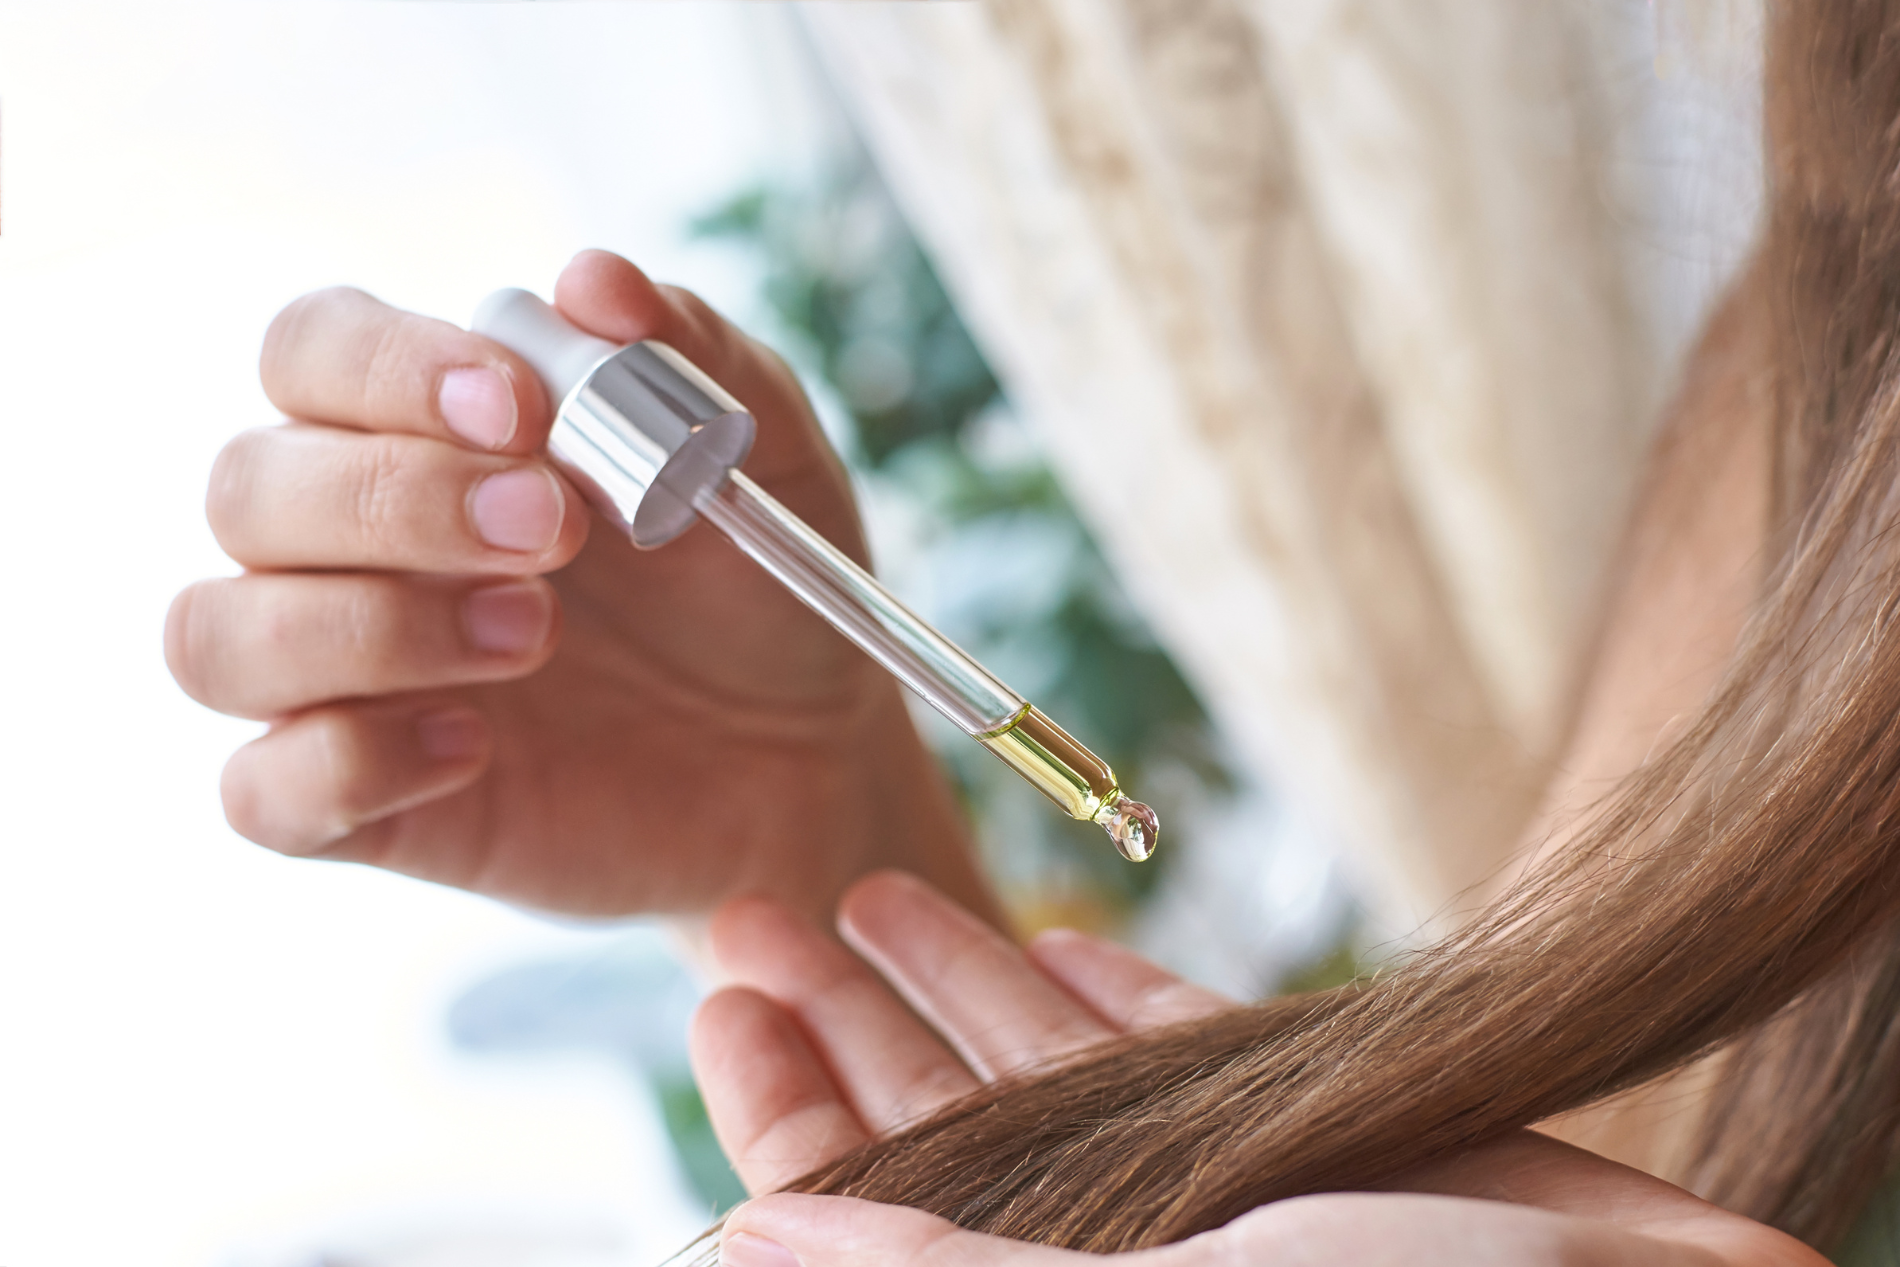 Hair oil myths vs reality